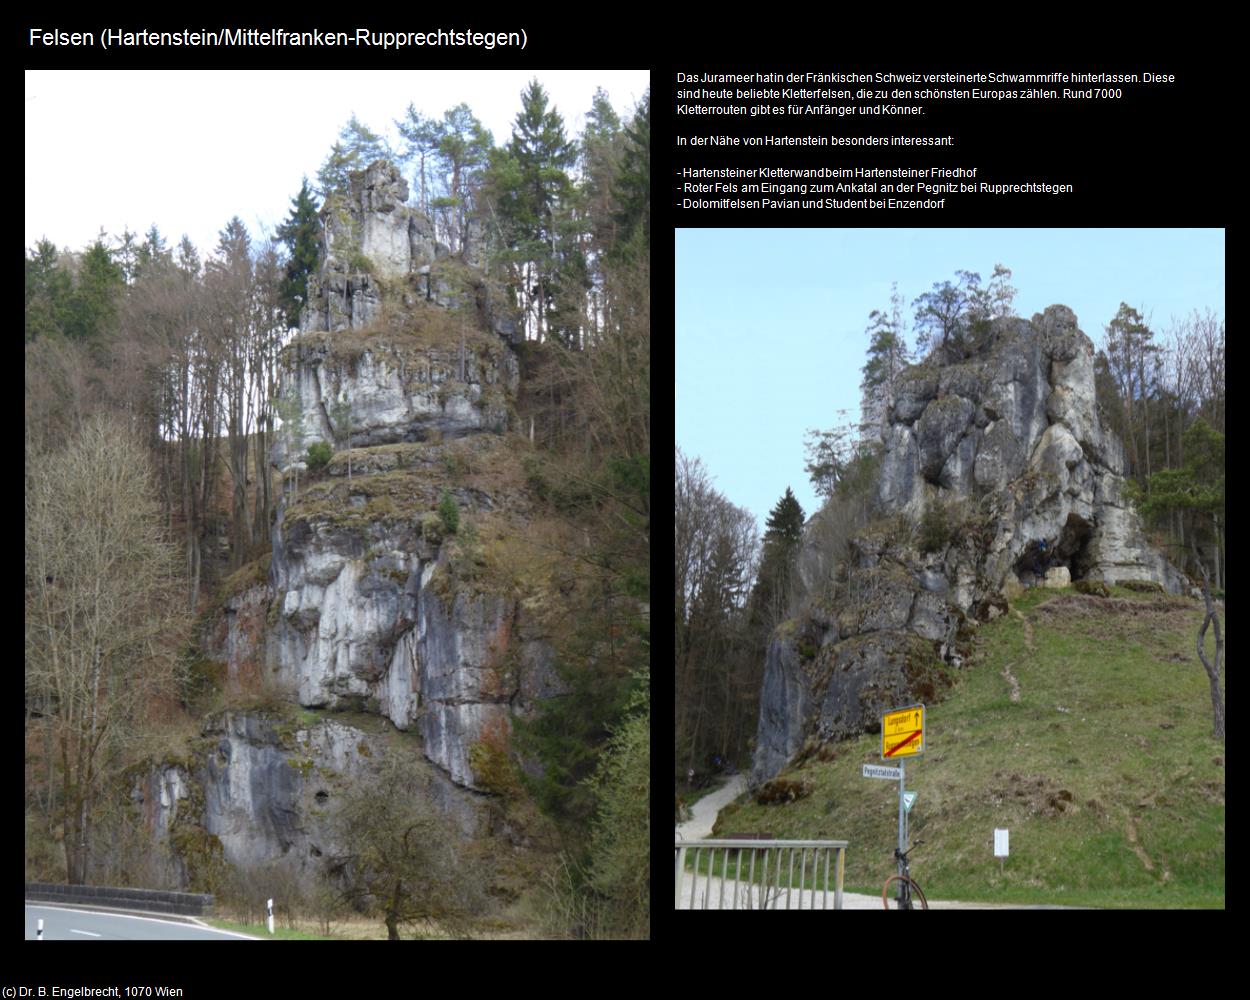 Felsen (Rupprechtstegen)  (Hartenstein in Mittelfranken) in Kulturatlas-BAYERN